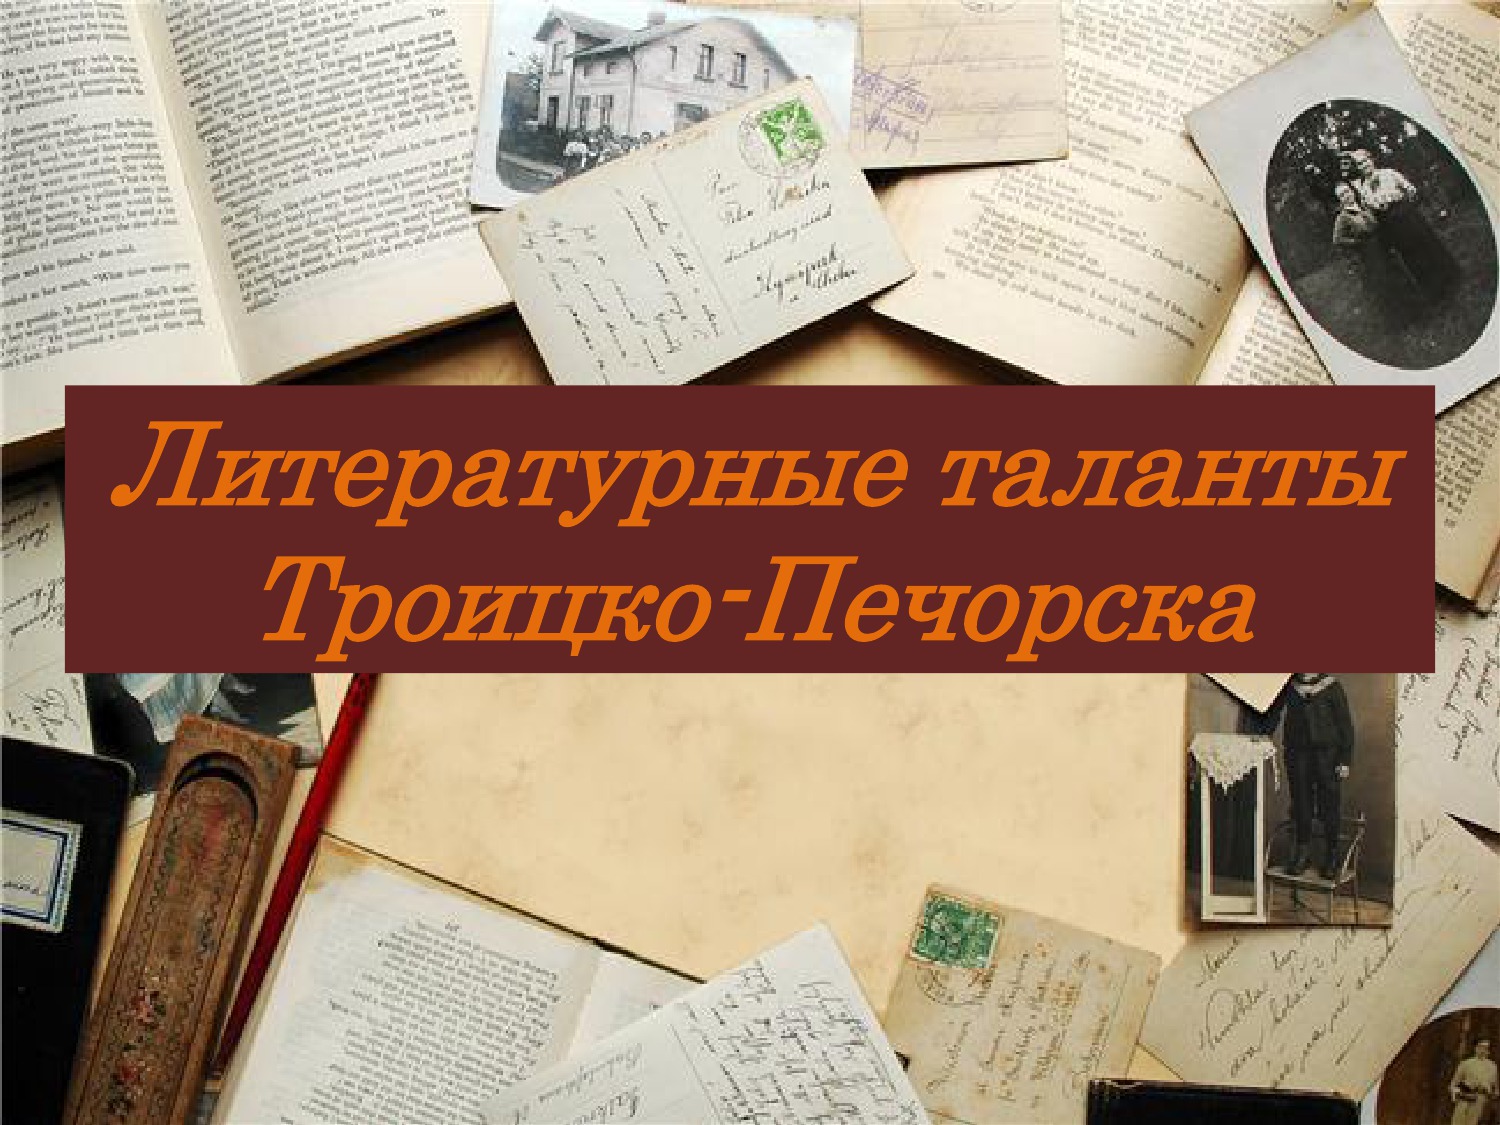 Literaturnye-talanty-Troizko-Pechorska.jpg